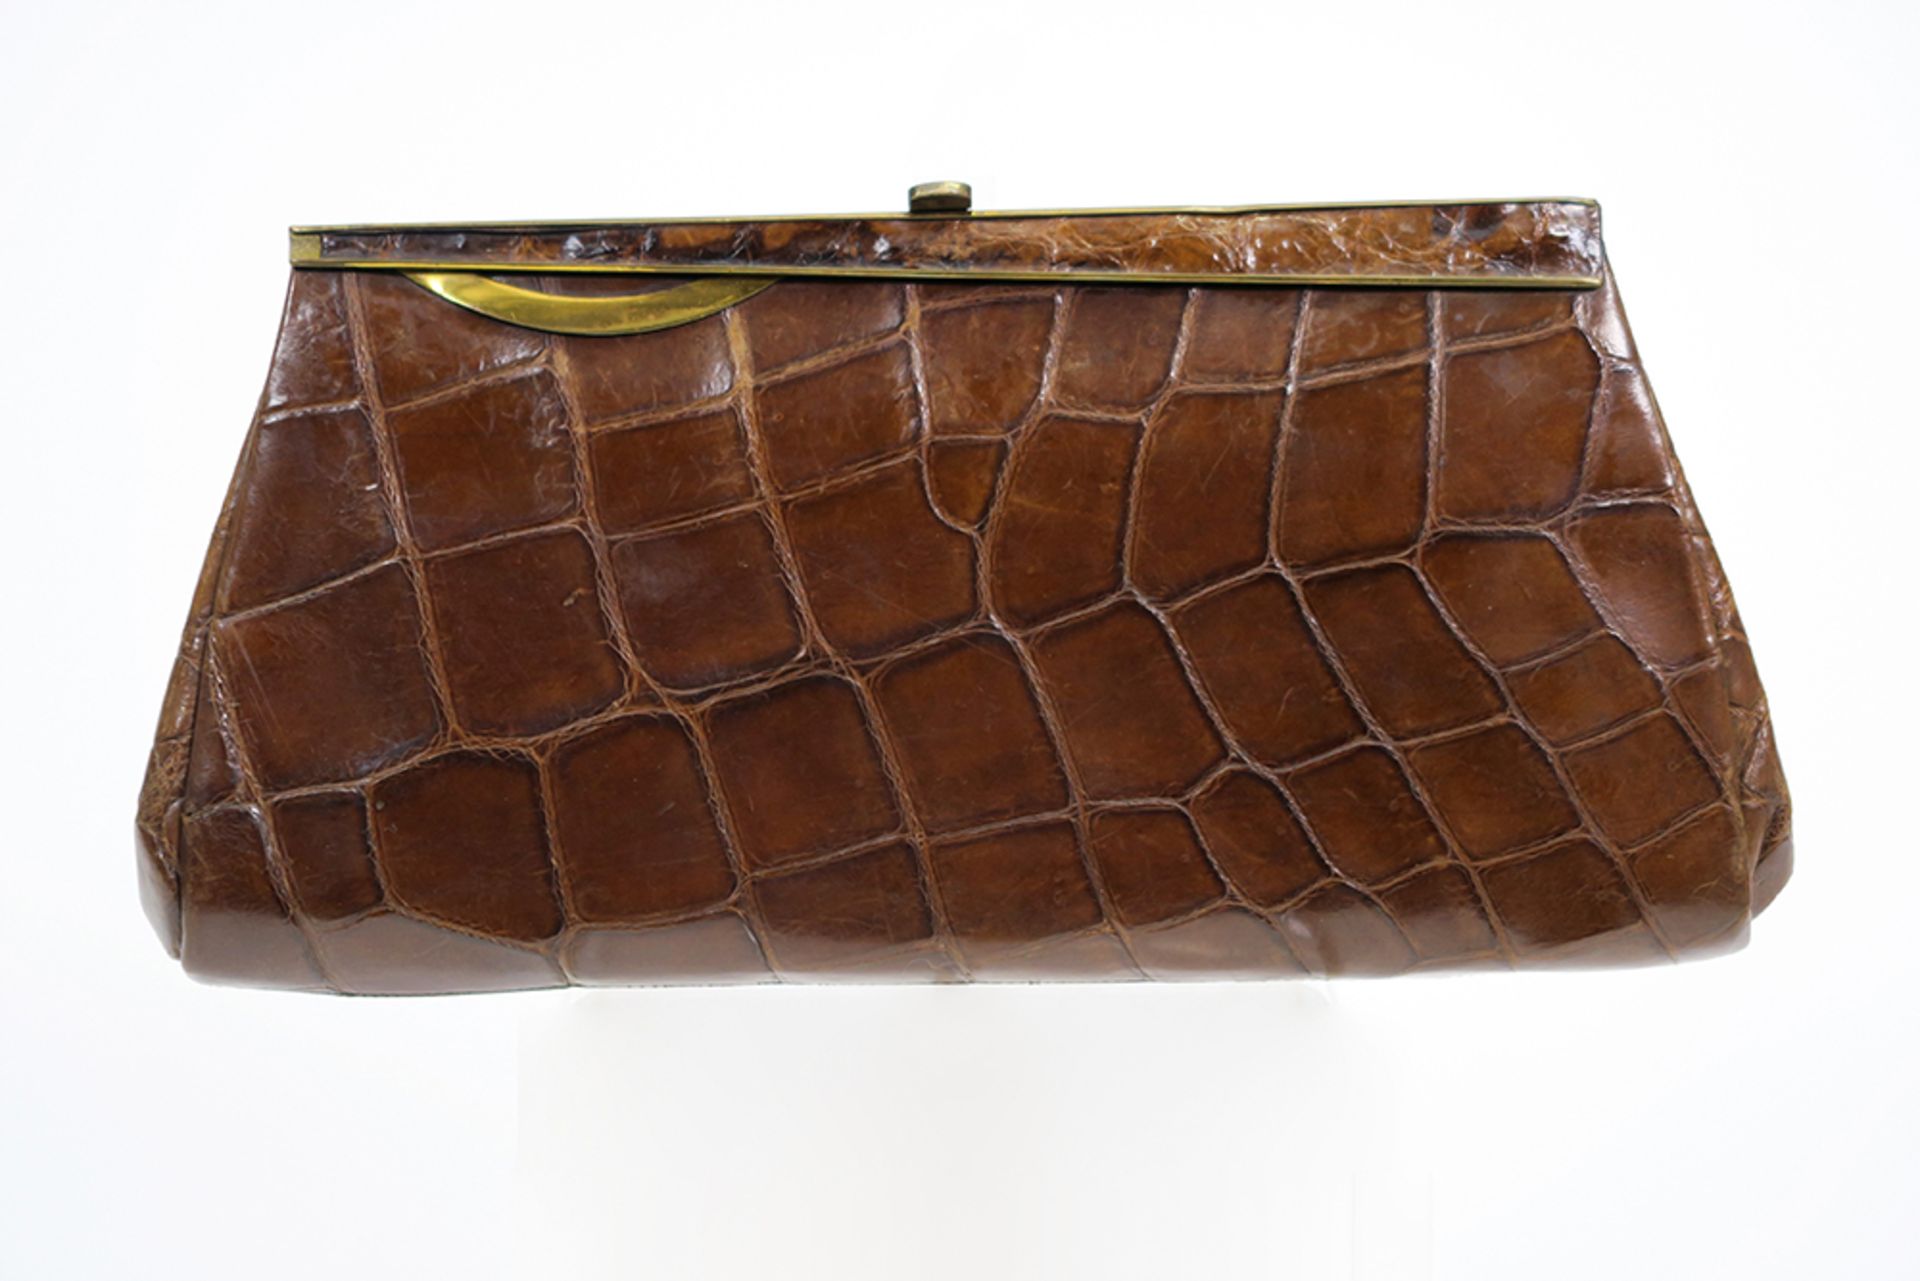 thirties' vintage crocodile leather handbag || Vintage handtas van ca 1930 in krokodillenleder